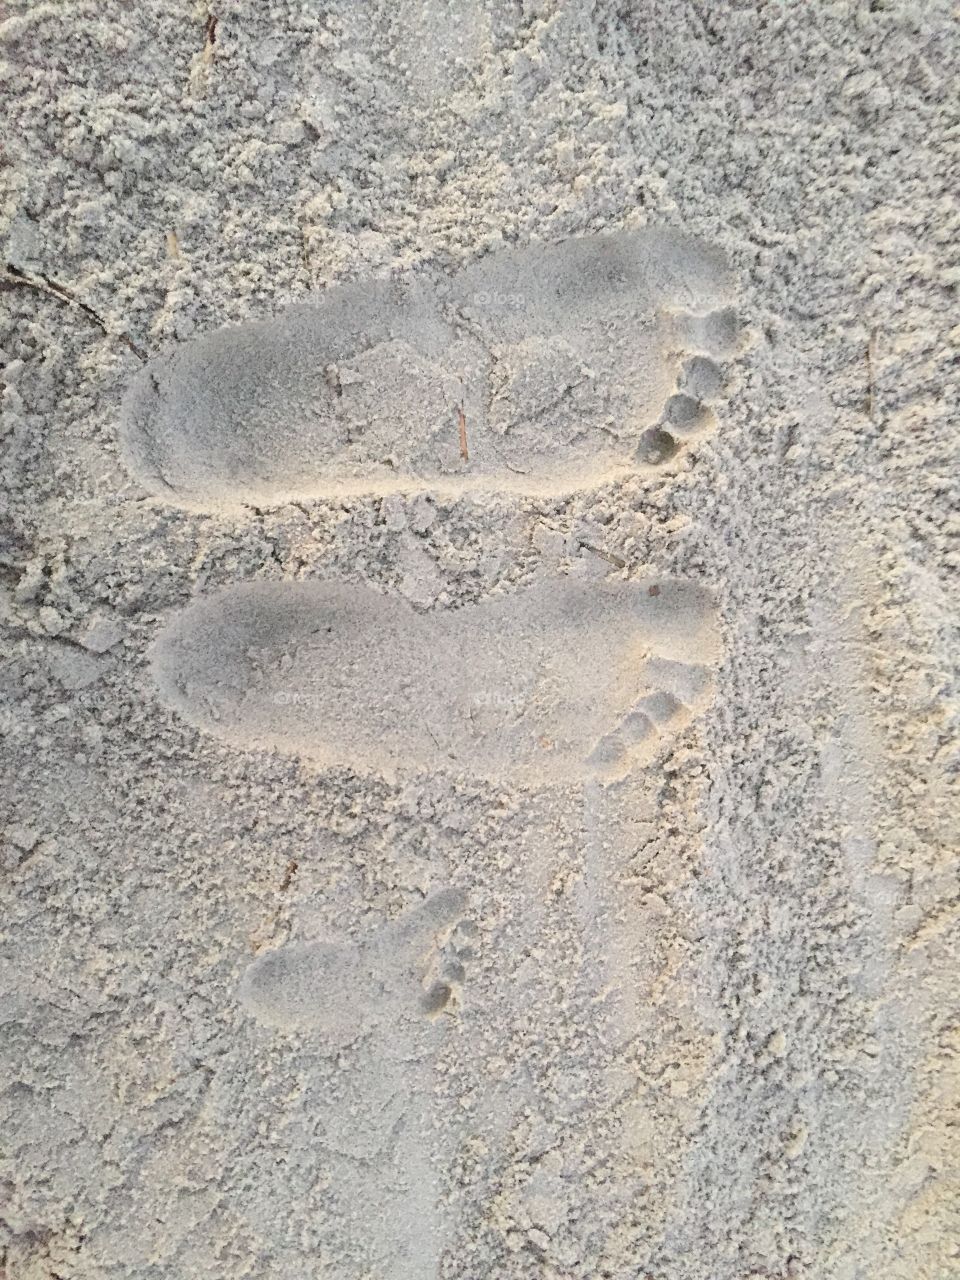 Family Footprints... Family Love